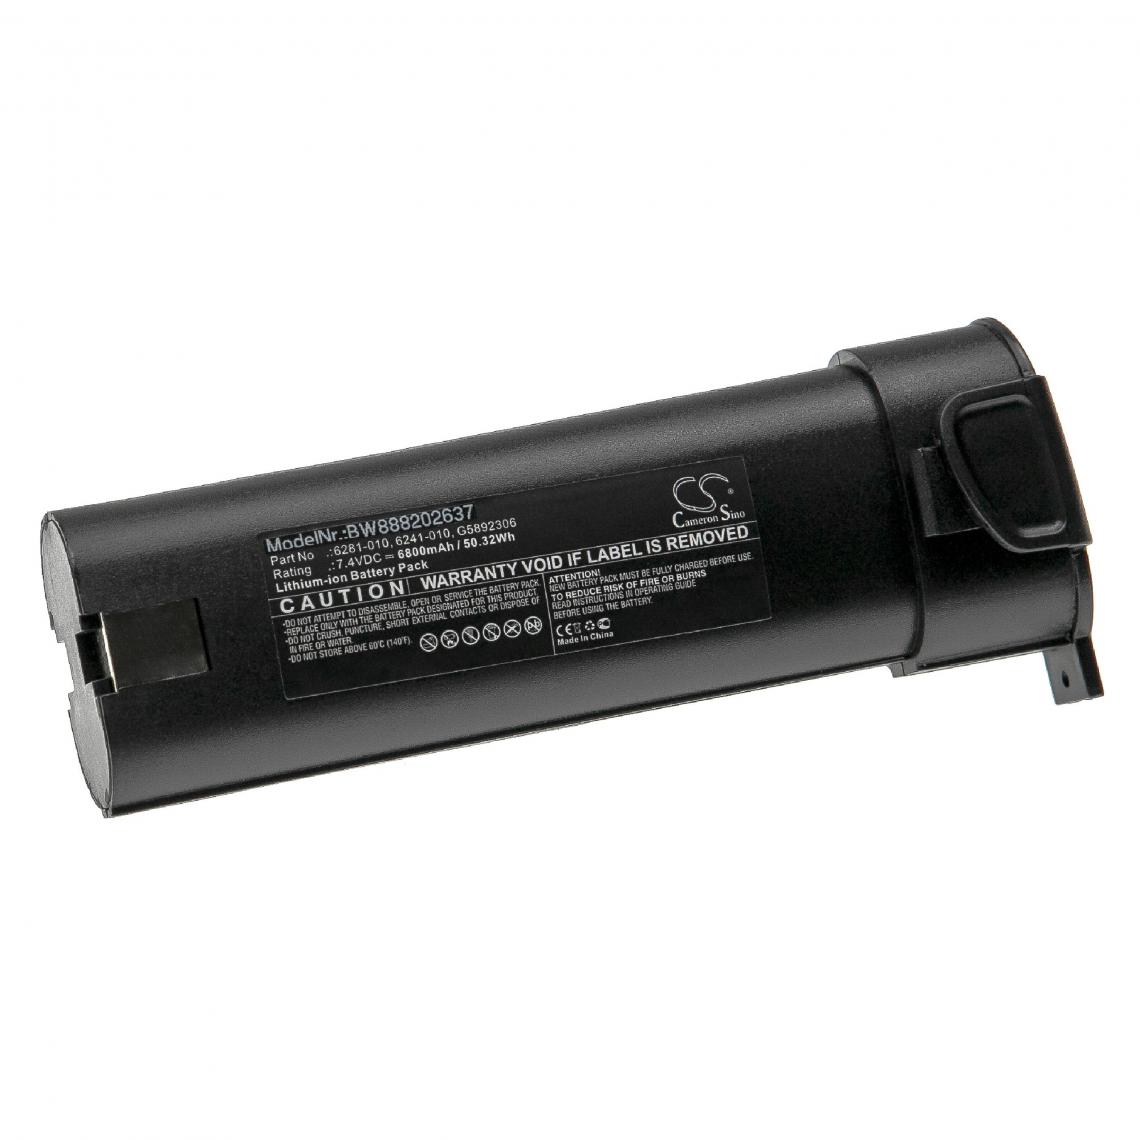 Vhbw - vhbw Batterie compatible avec Monarch Tachometers outil de mesure (6800mAh, 7,4V, Li-ion) - Piles rechargeables